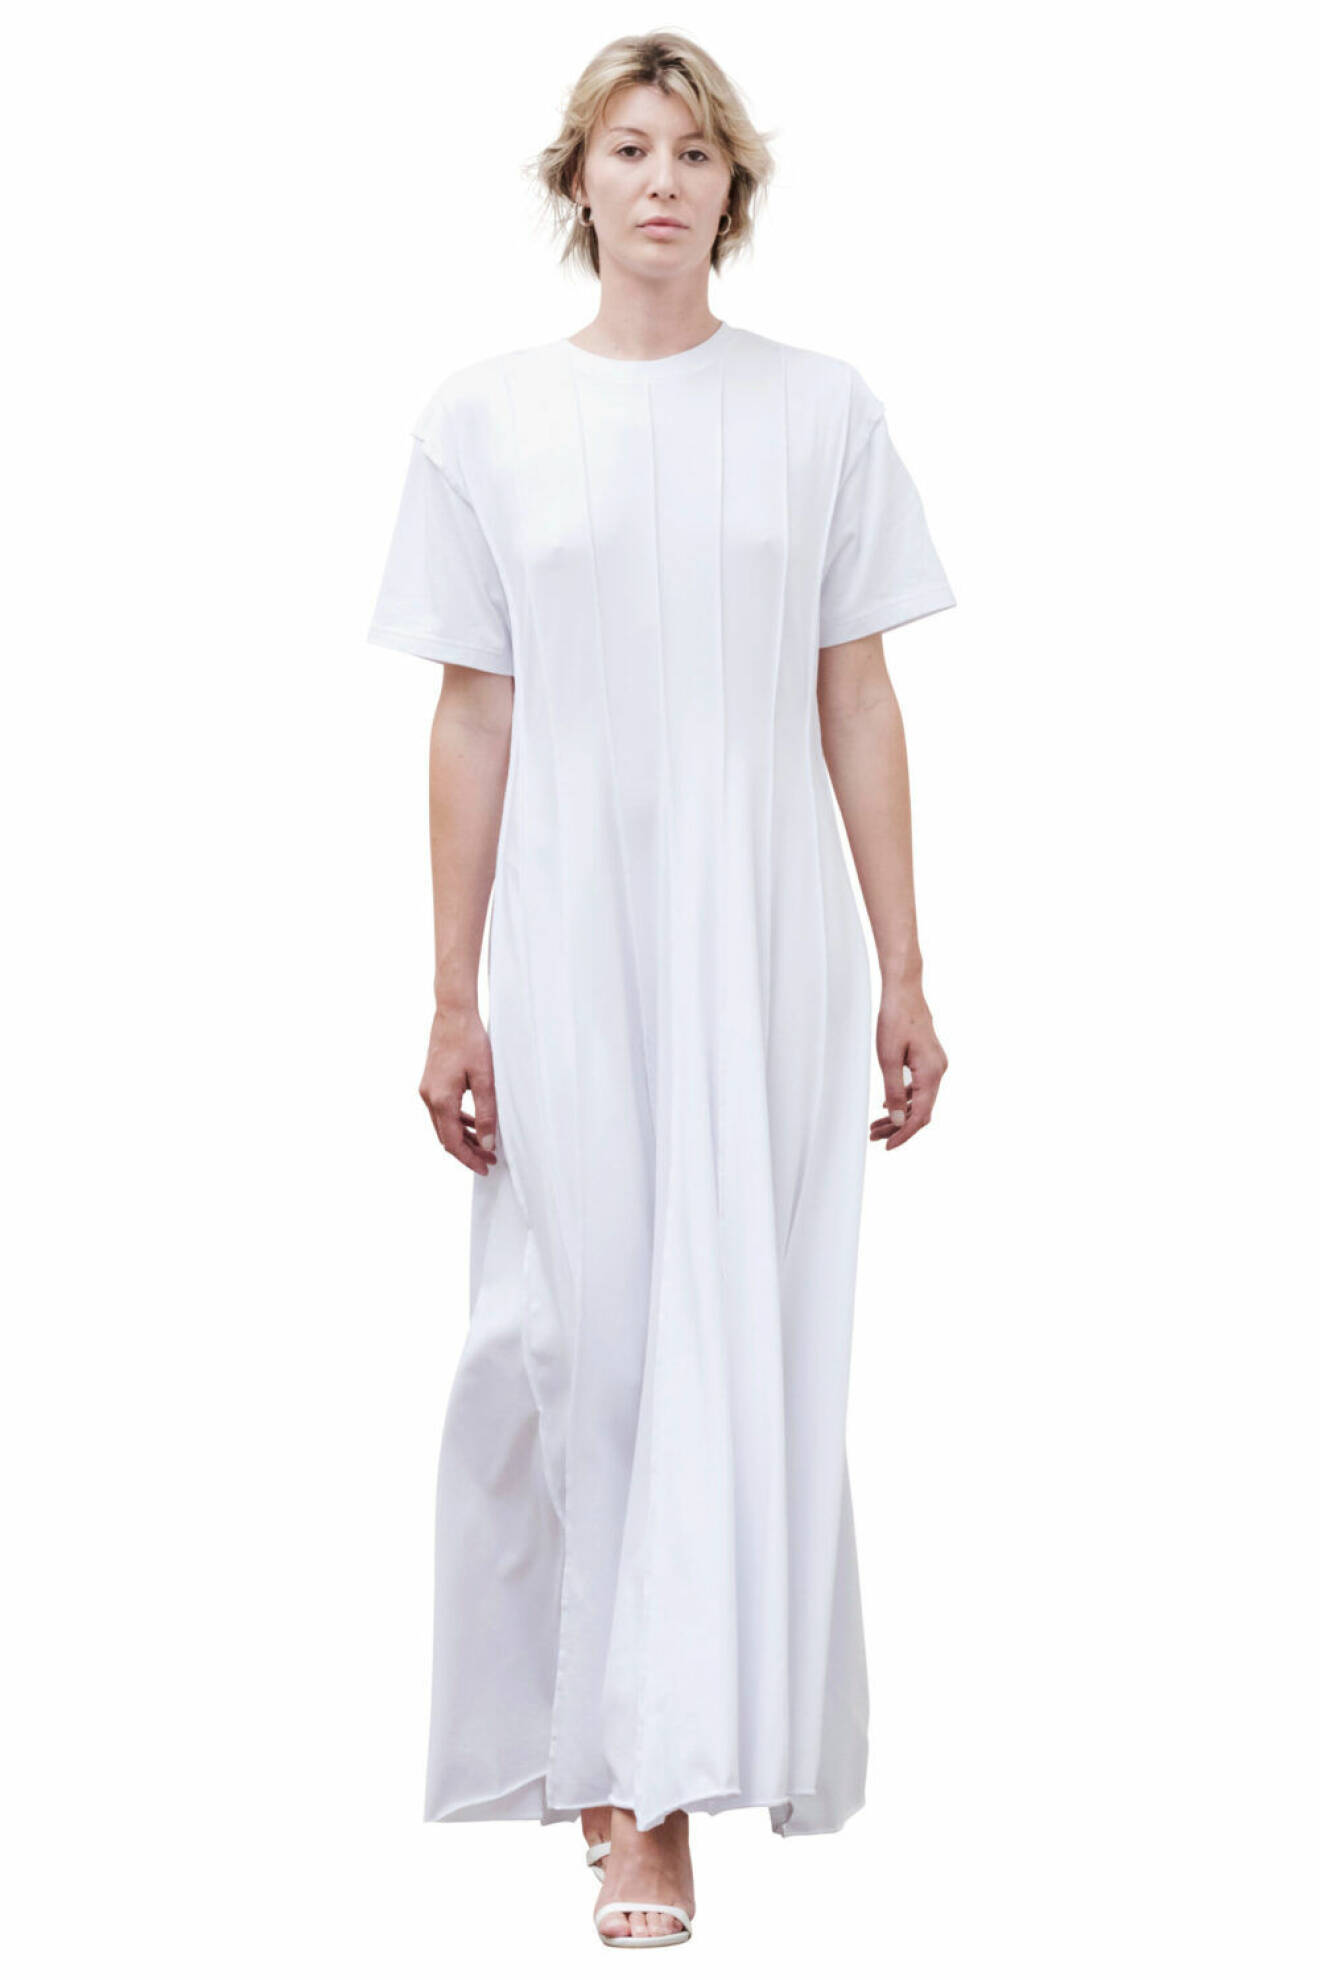 Långklänning i vitt från Nhorm